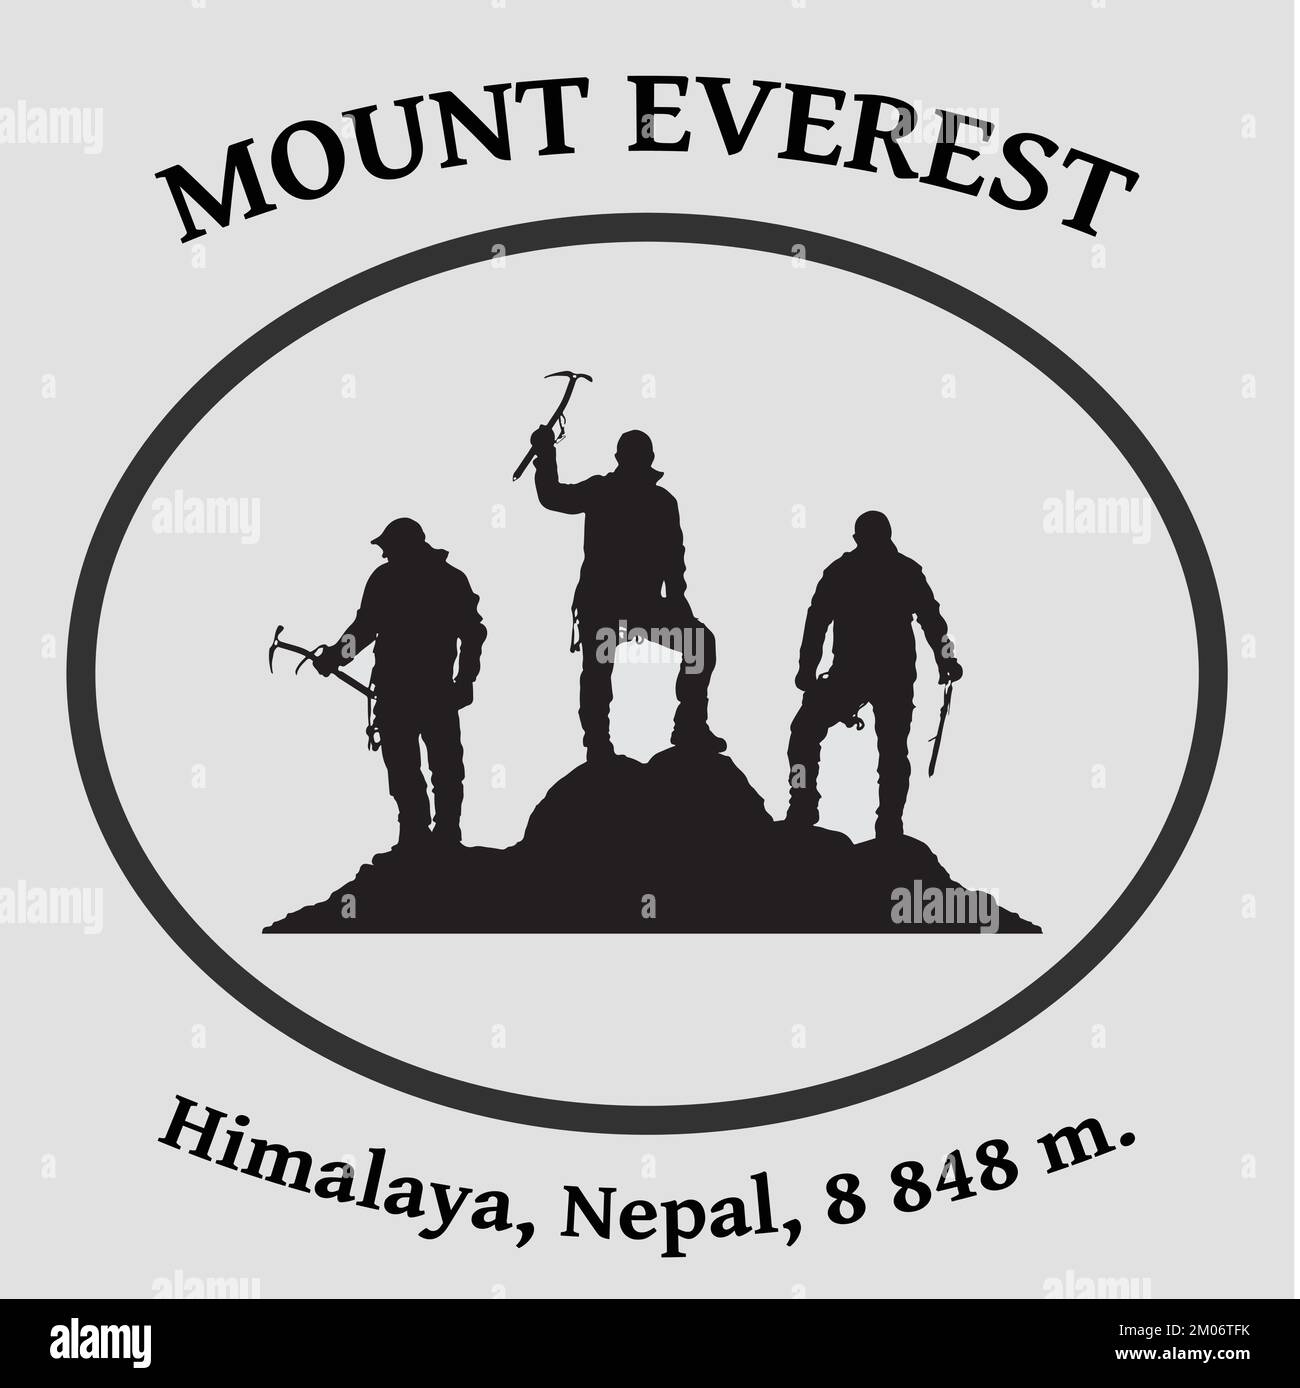 Trois grimpeurs noirs avec hache à glace à la main ont le sommet du mont Everest sur fond blanc, escalade de montagne, logo d'illustration de vecteur Illustration de Vecteur